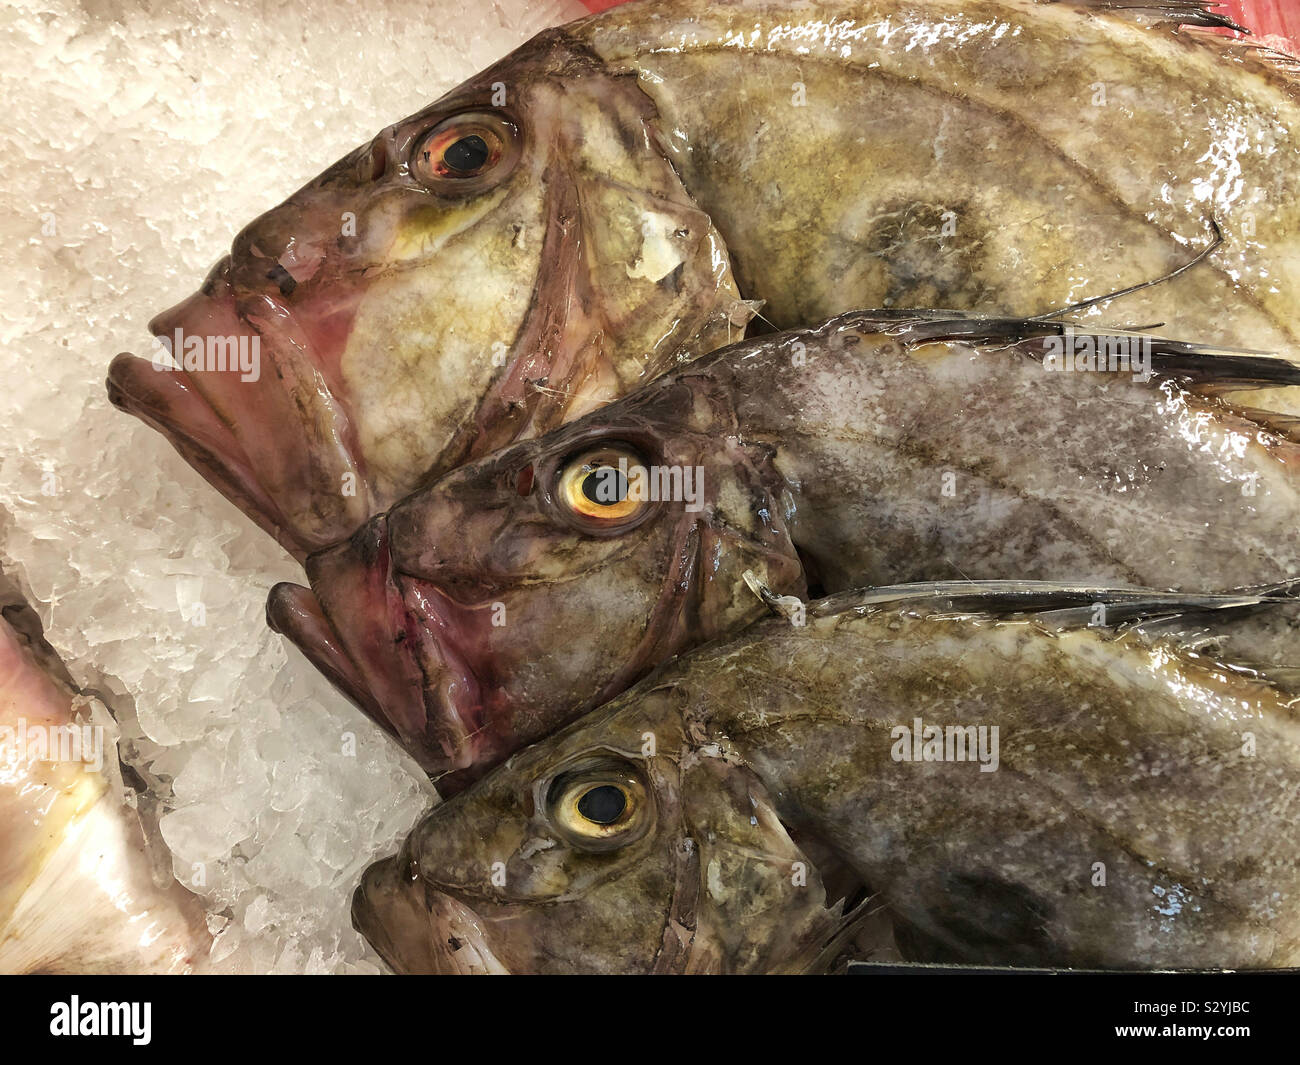 Three John Dory fish (Zeus Faber) on ice. Stock Photo